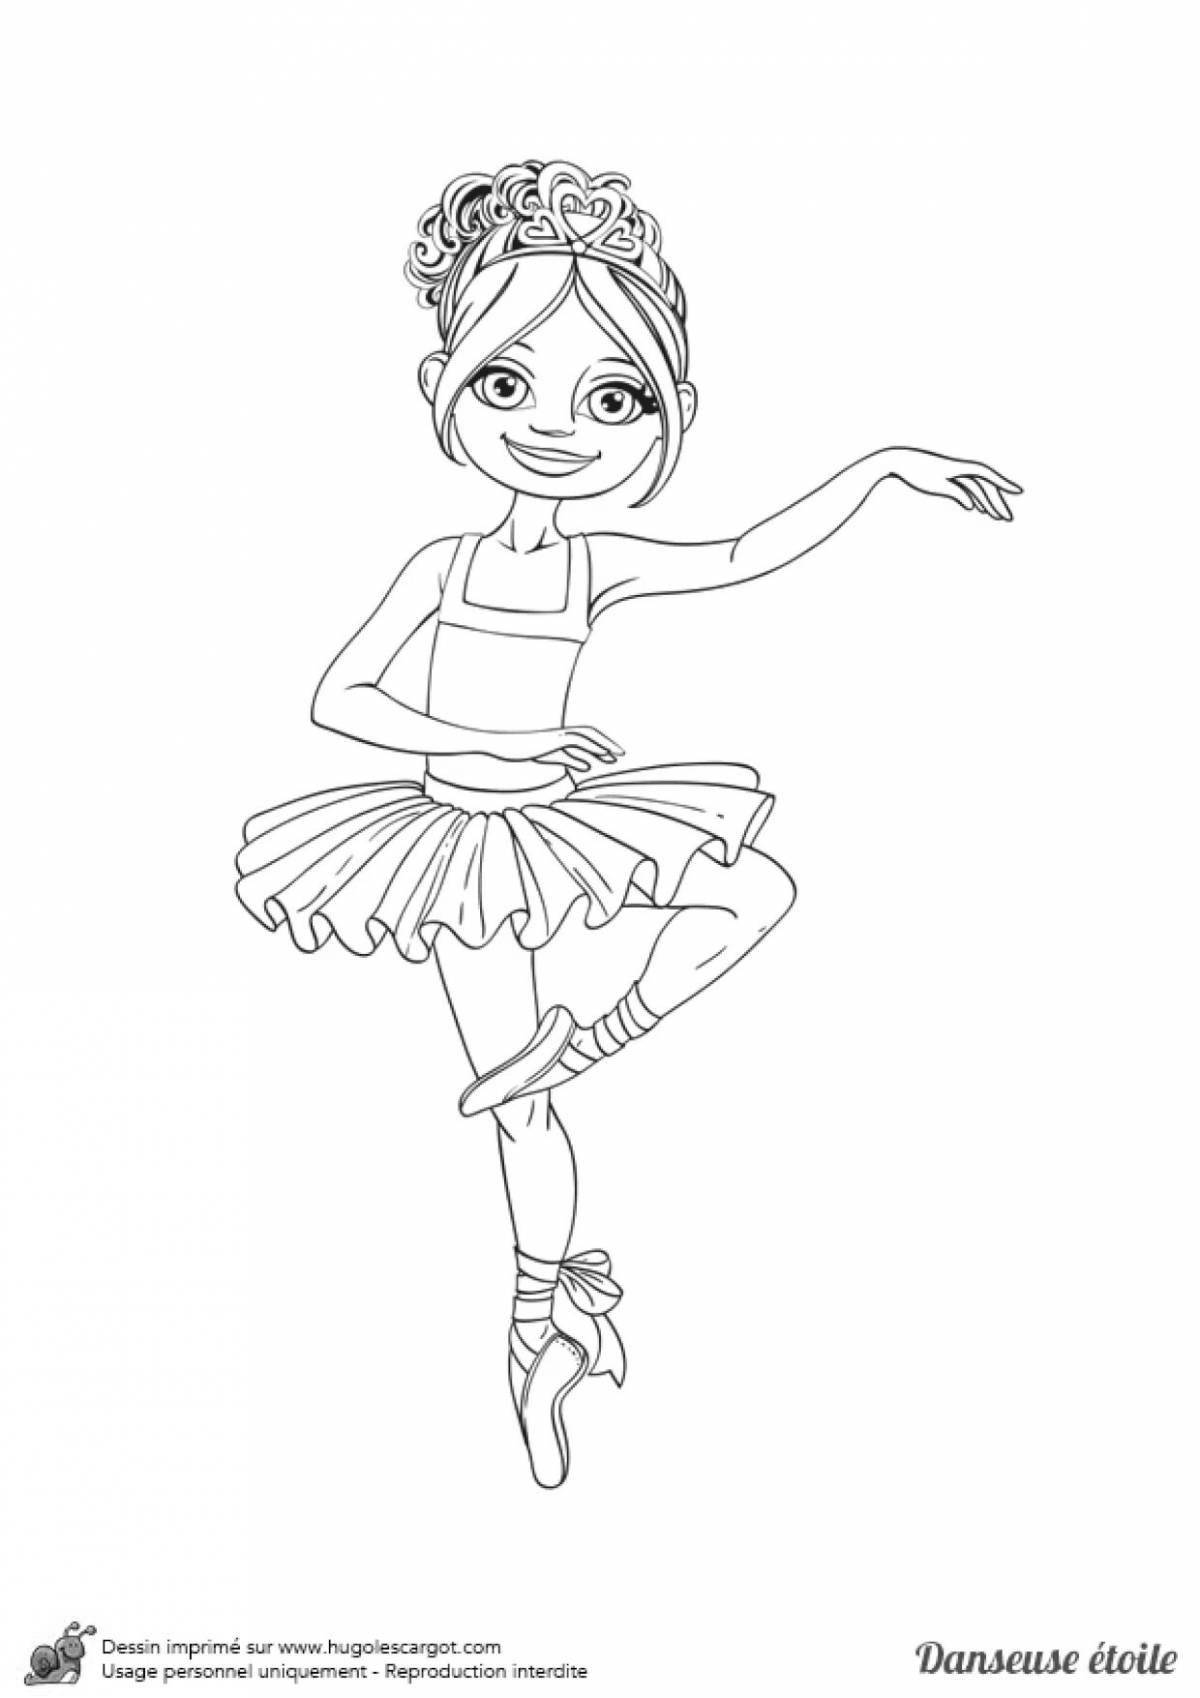 Раскраска радостная танцующая девочка